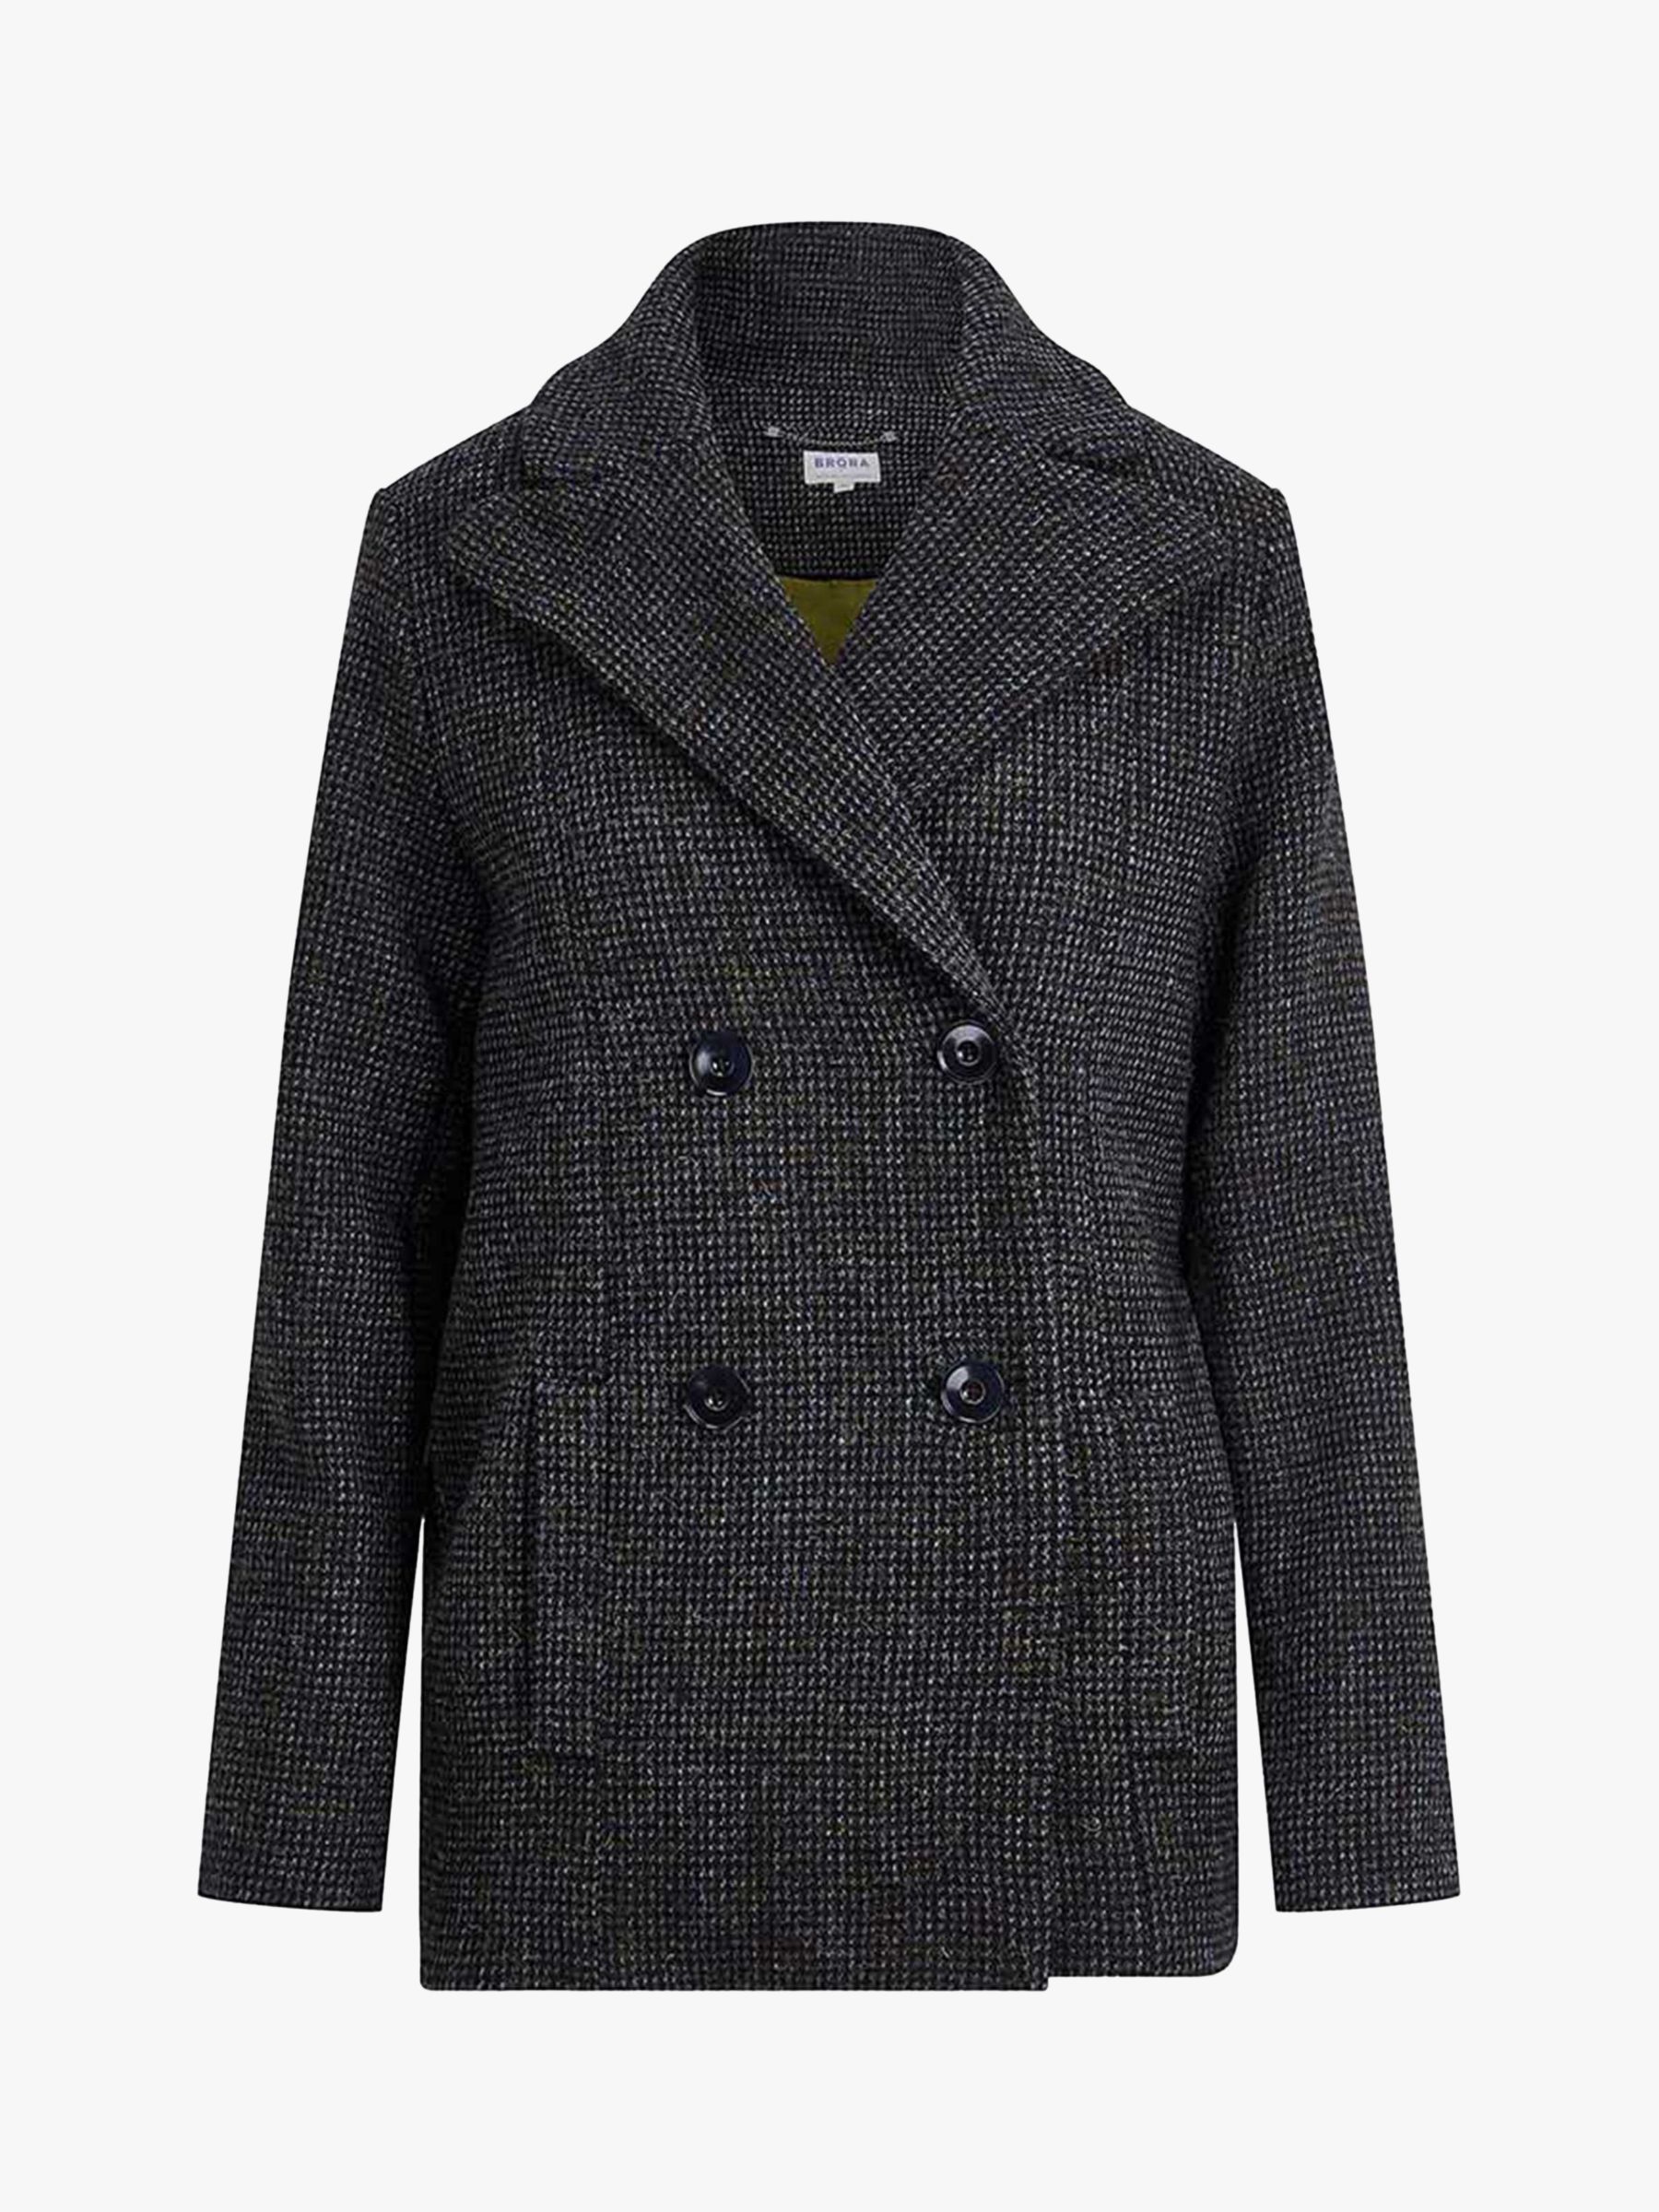 Brora Harris Tweed Pea Coat, Sorrel/Peat